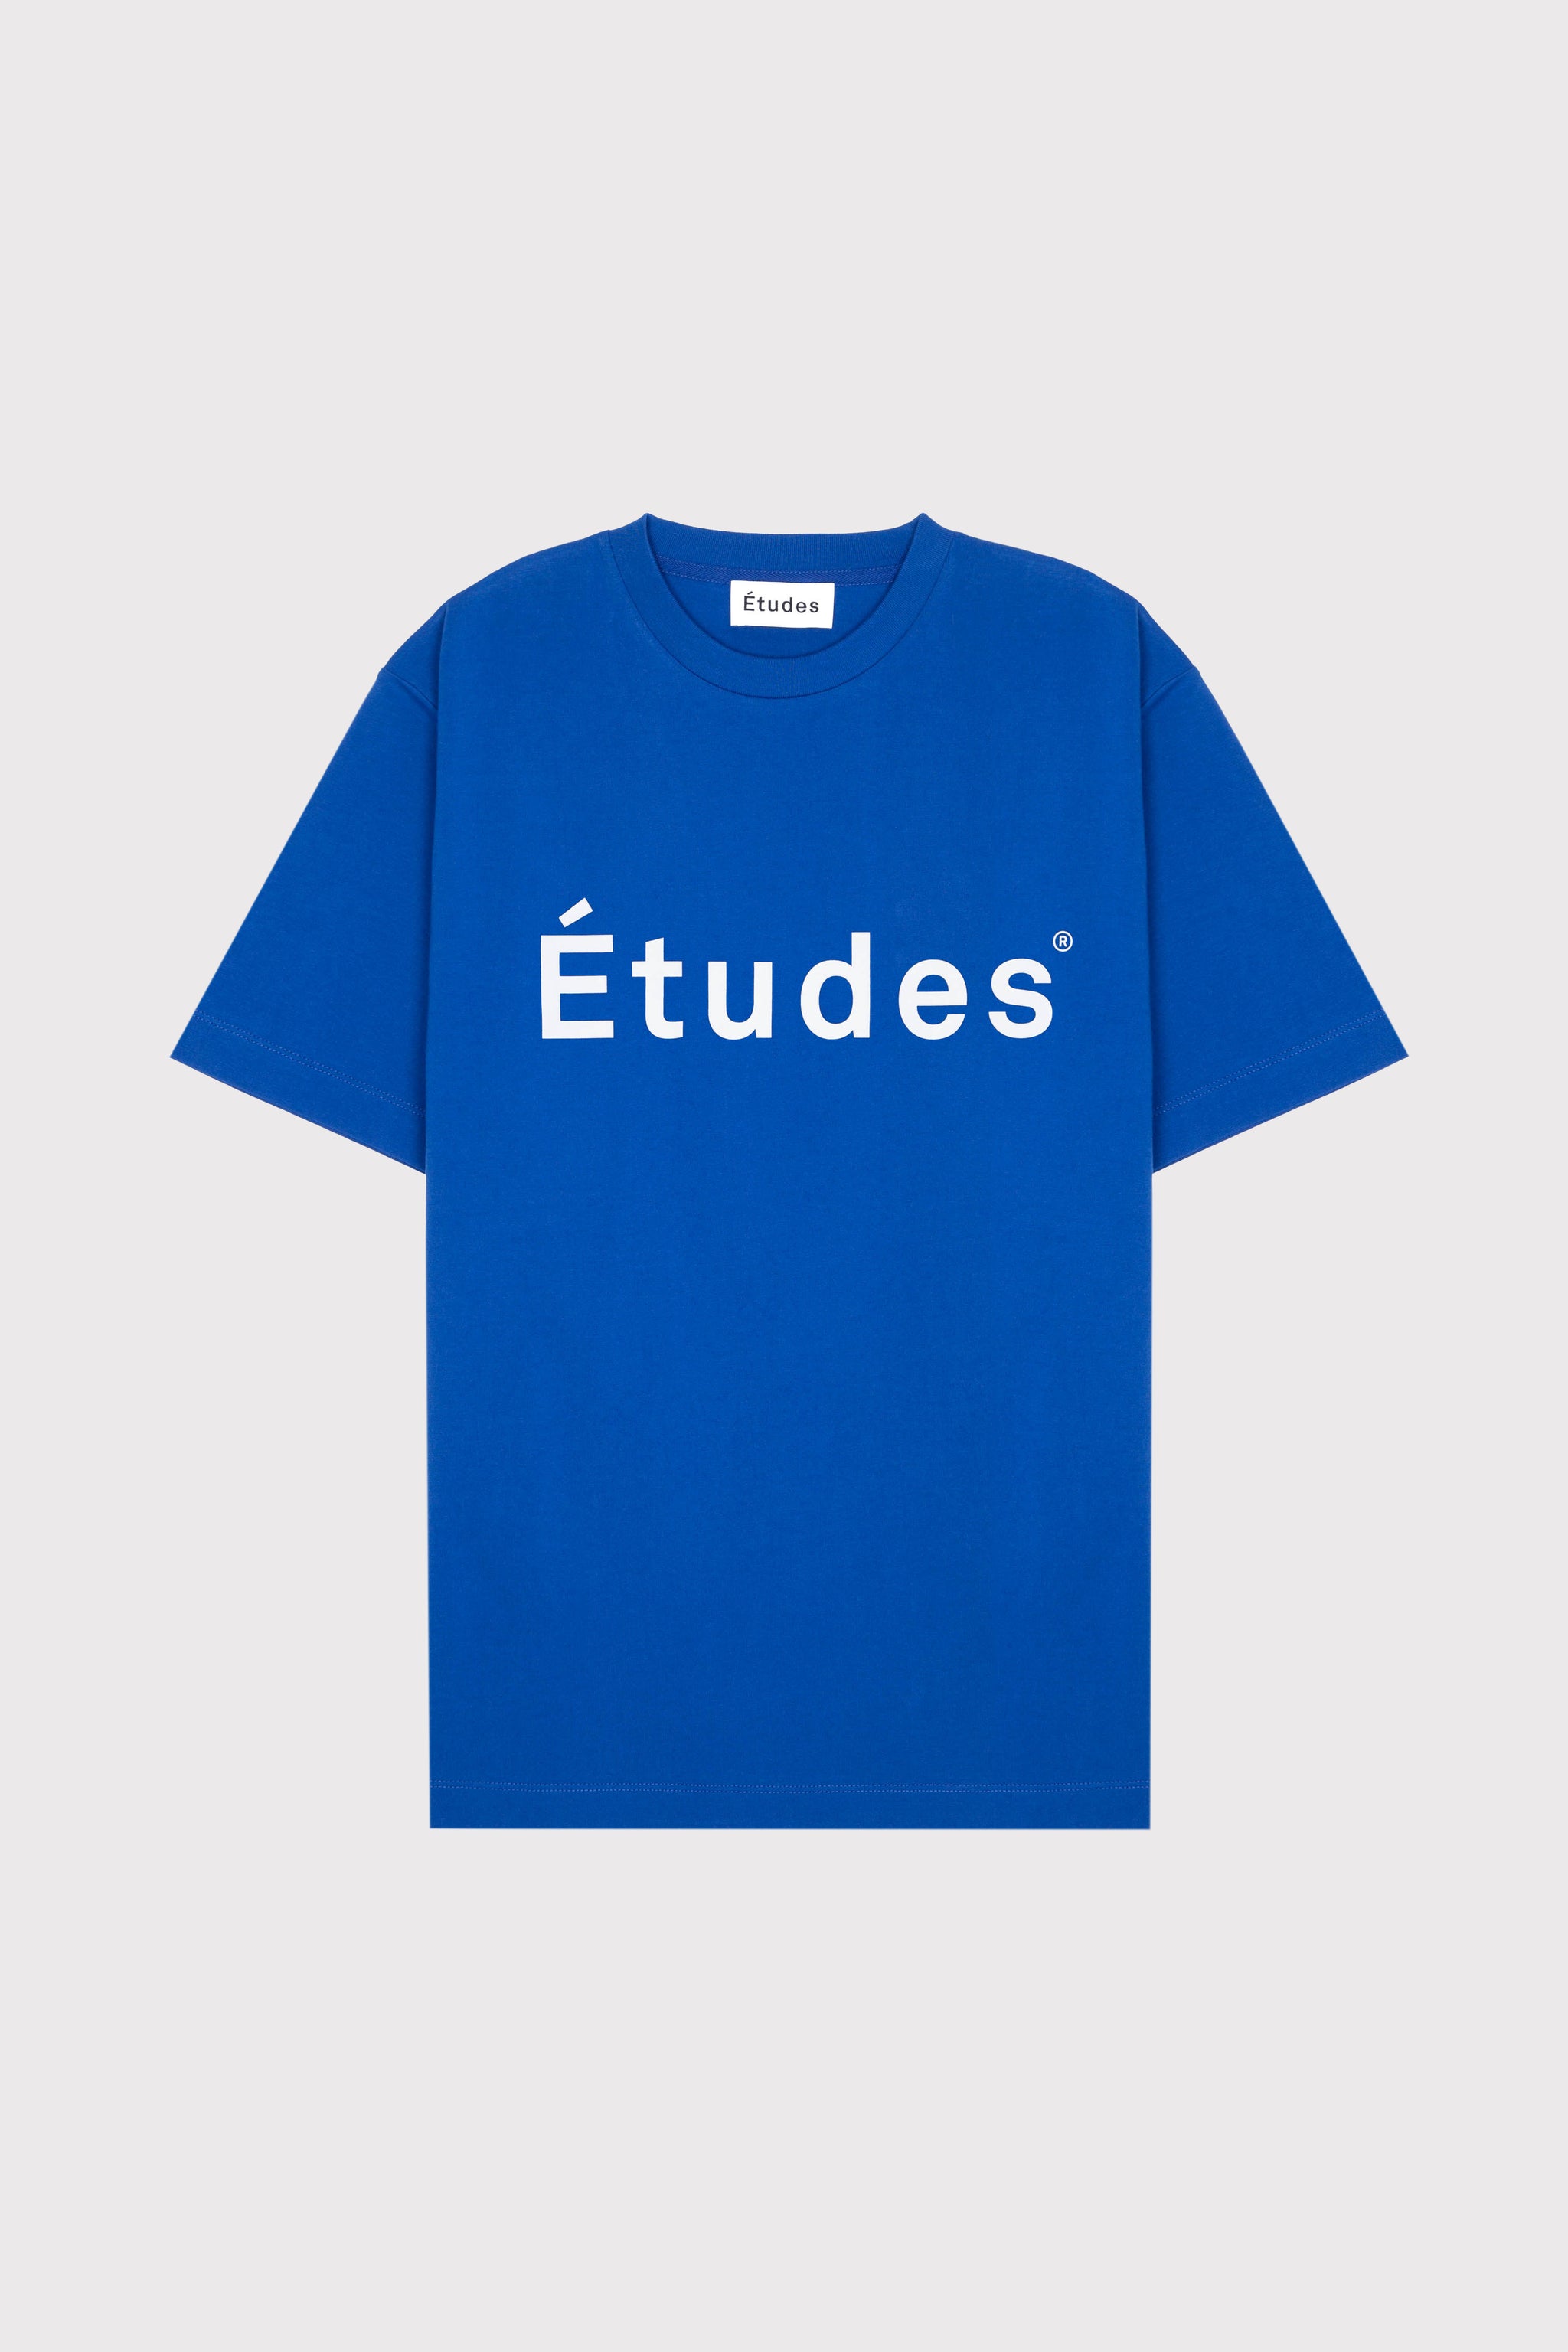 Études WONDER ETUDES BLUE t-shirt 2